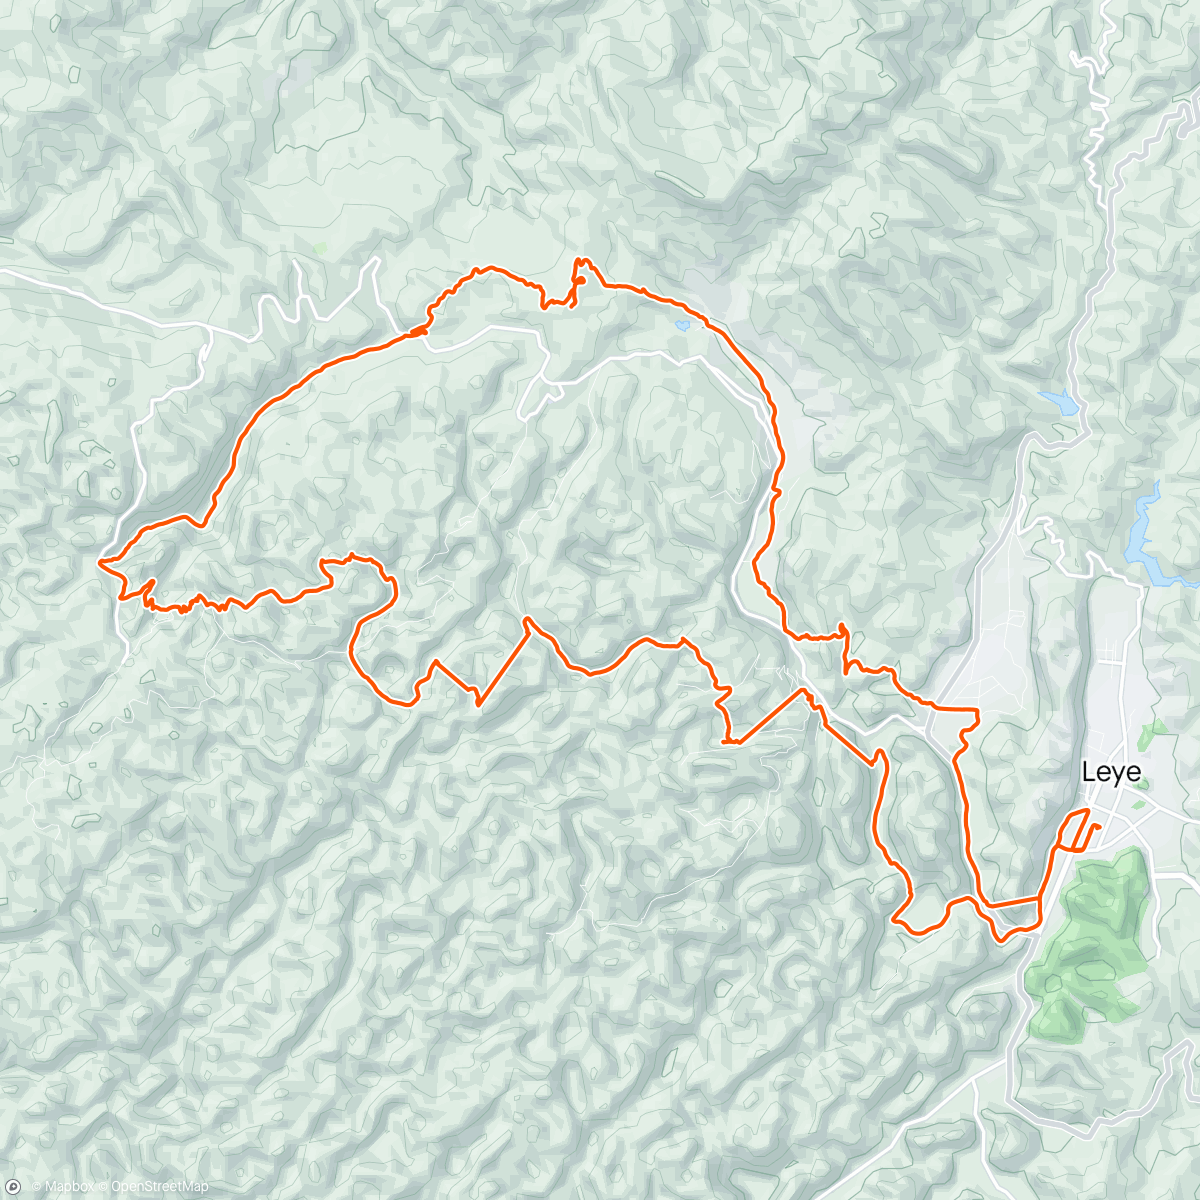 Mapa da atividade, Baise Leye cave trail run